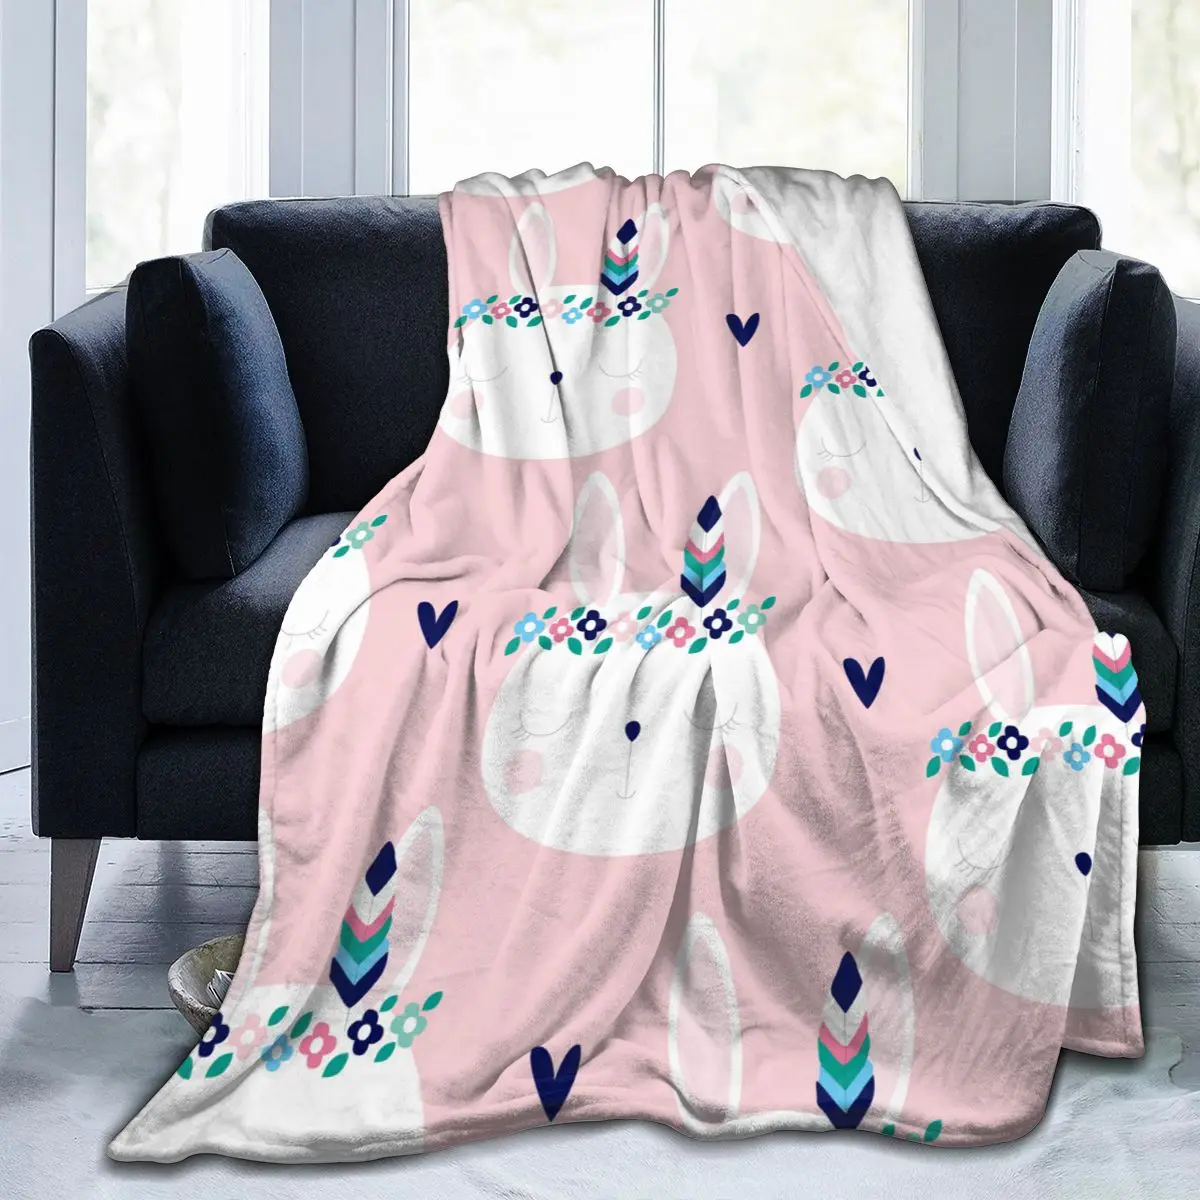 

Фланелевое одеяло, ультра-мягкое Флисовое одеяло с милым кроликом в стиле хиппи, покрывало для халата, дивана, кровати, путешествий, дома, зи...